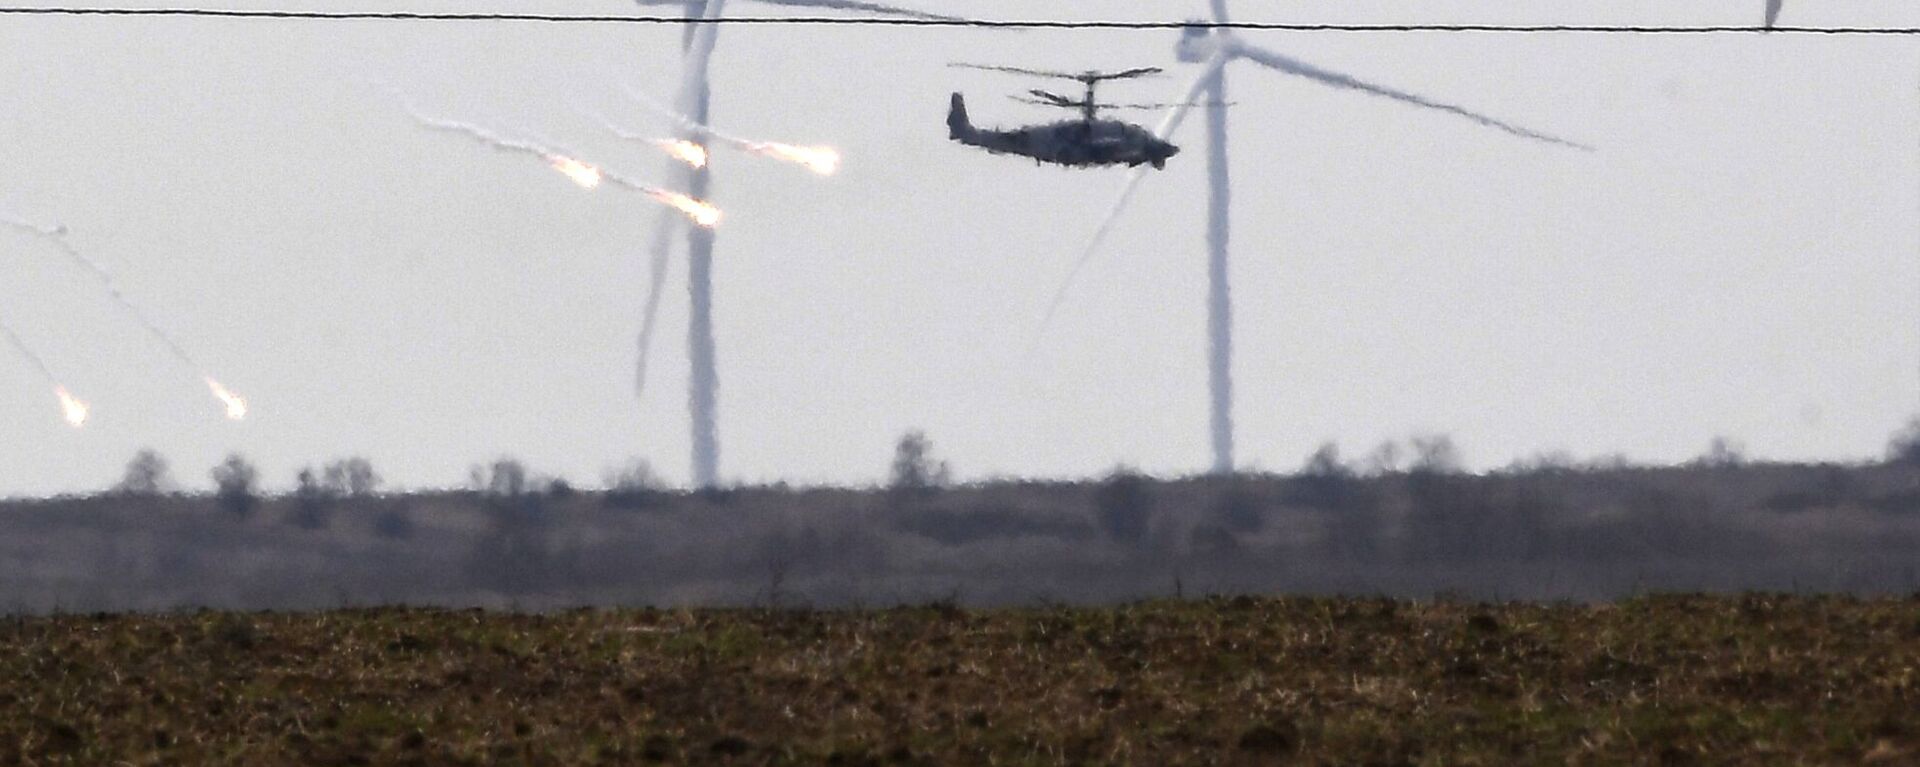 مروحيات هجومية من طراز مي-24 تابعة للقوات الجوية الروسية تحلق في سماء أرمينيا 28 فبراير 2022 - سبوتنيك عربي, 1920, 11.04.2022